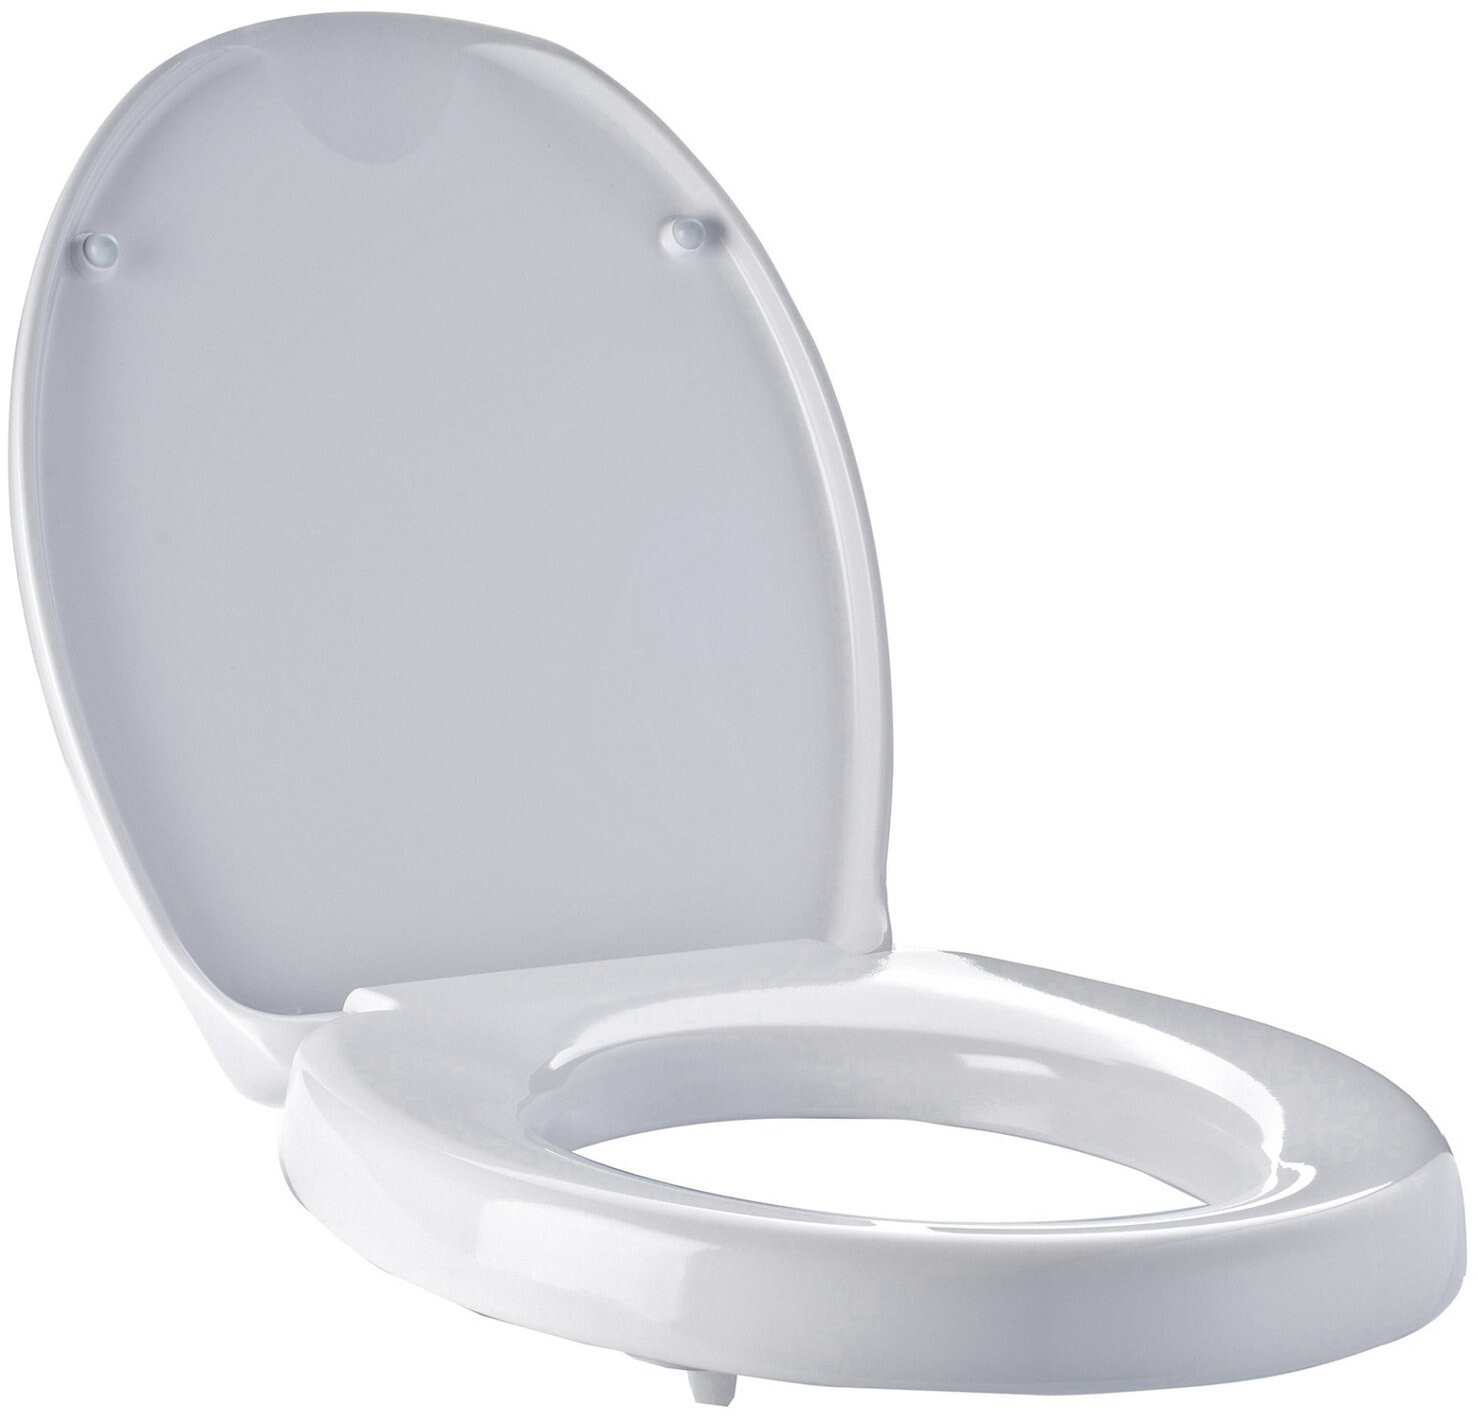 Ridder WC-Sitzerhöhung Premium weiß ab 104,99 € | Preisvergleich bei